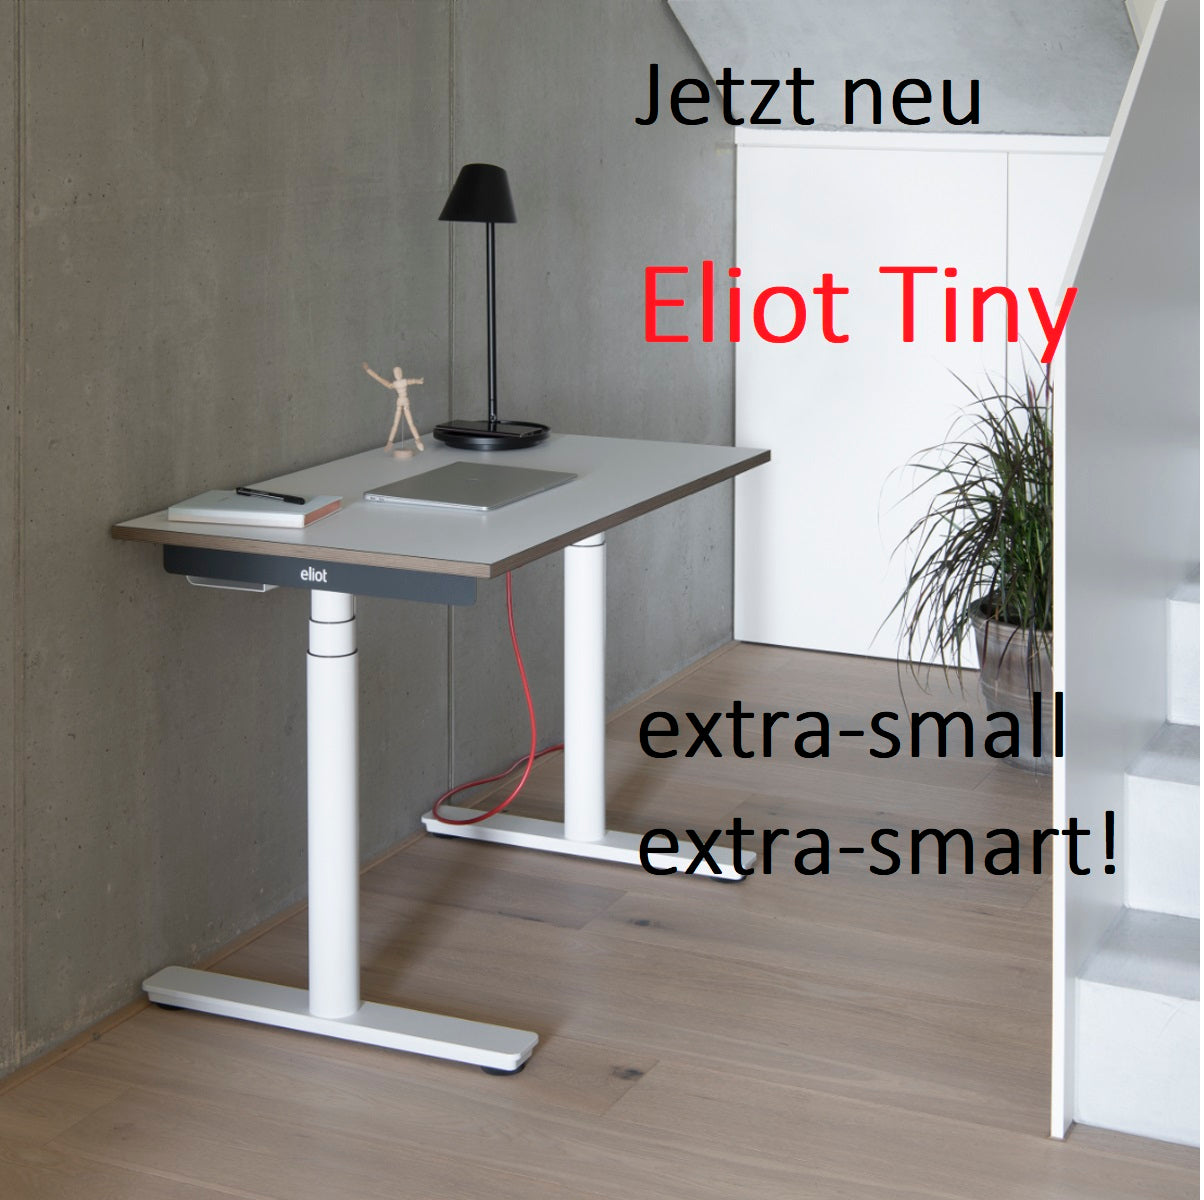 mehr Bewegung in deinem Büroalltag mit dem höhenverstellbaren Schreibtisch, Bürotisch Eliot von Smartfurniture